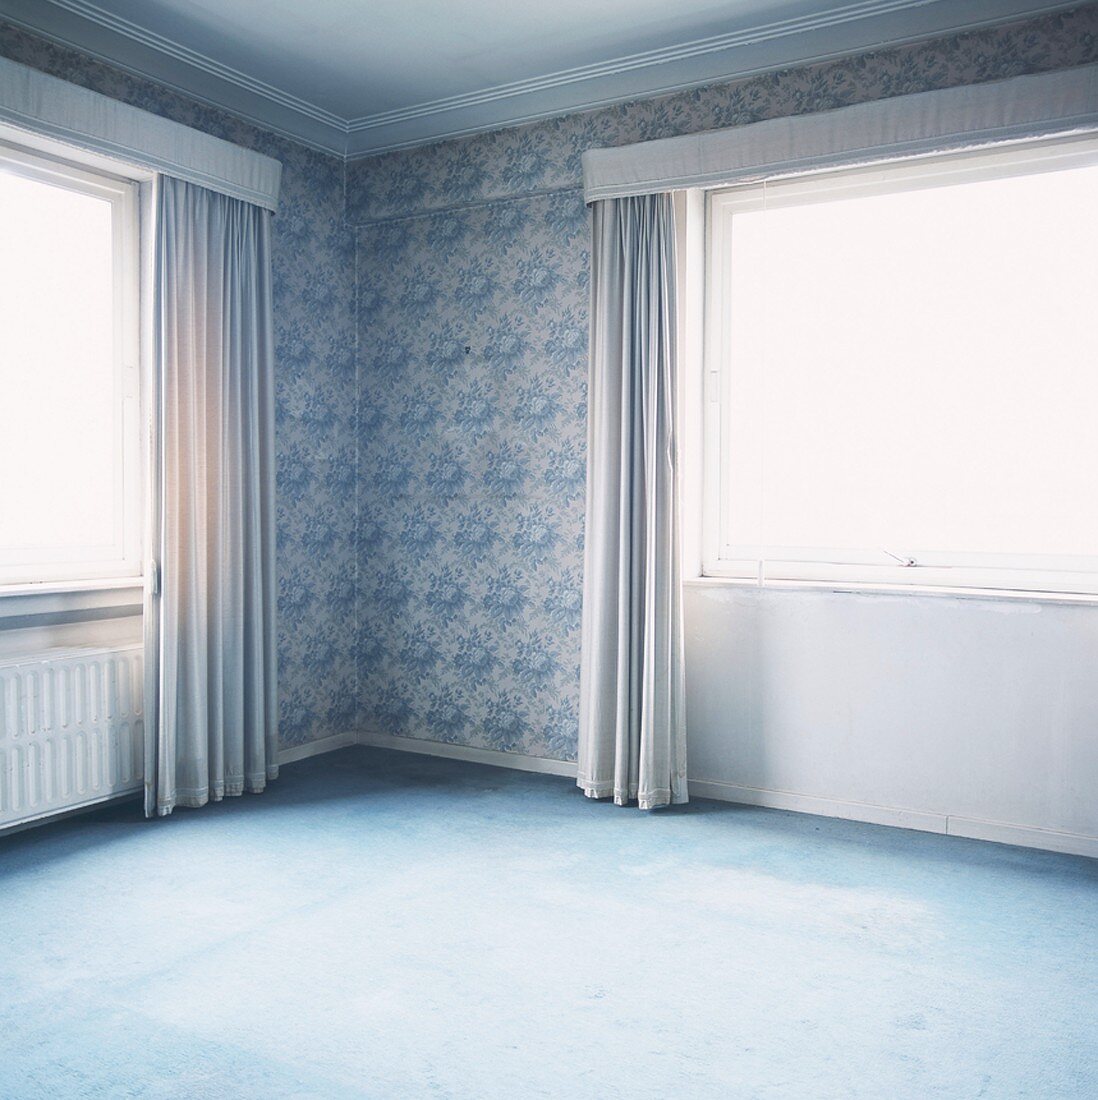 Ein leerer Raum mit Teppichboden und Barocktabete in Blau